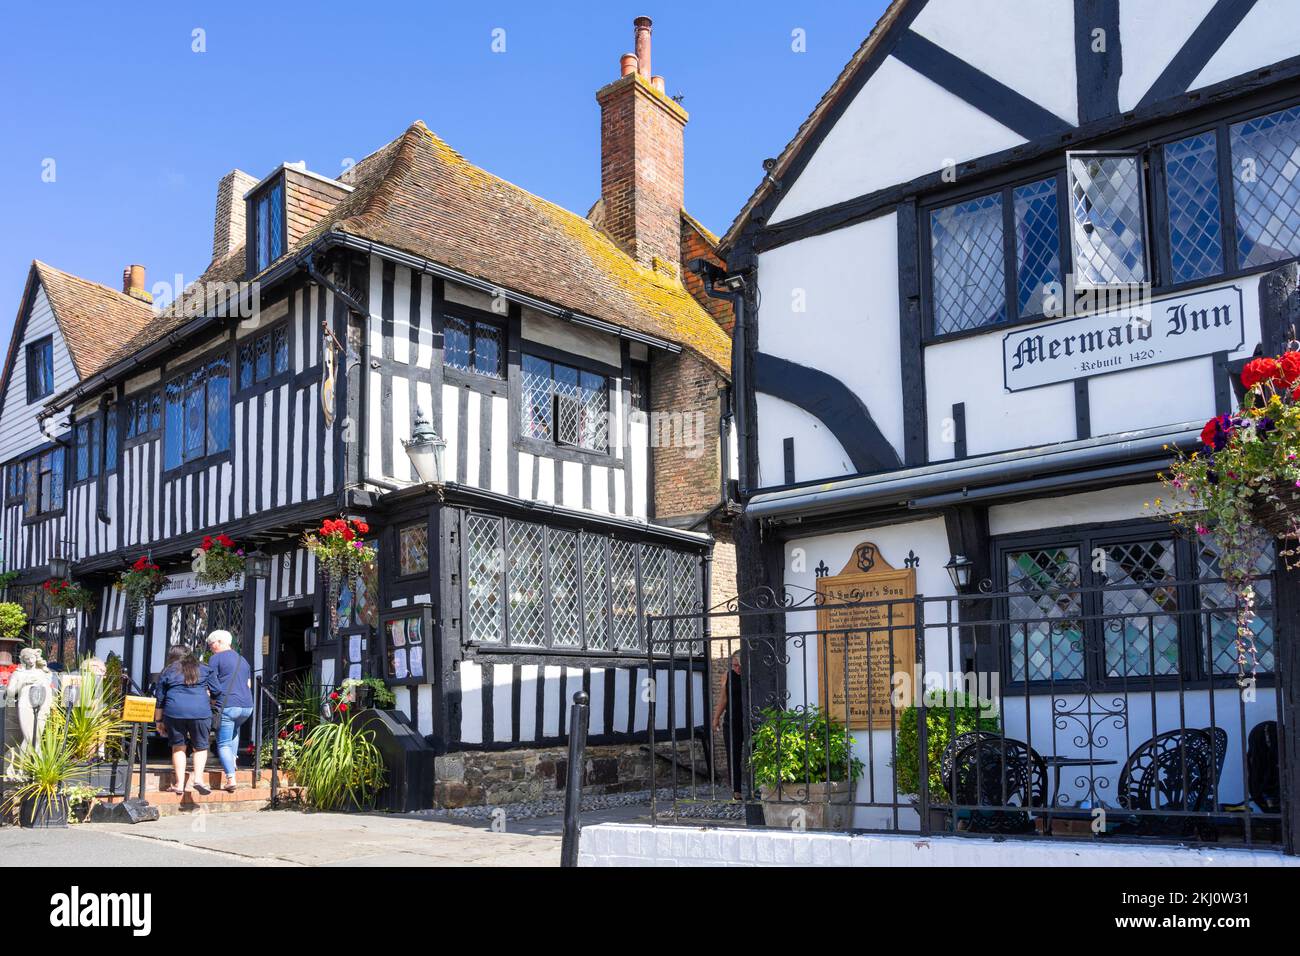 Rye East Sussex Rye Mermaid Inn sulla storica Mermaid Street Rye Sussex England UK GB Europe Foto Stock